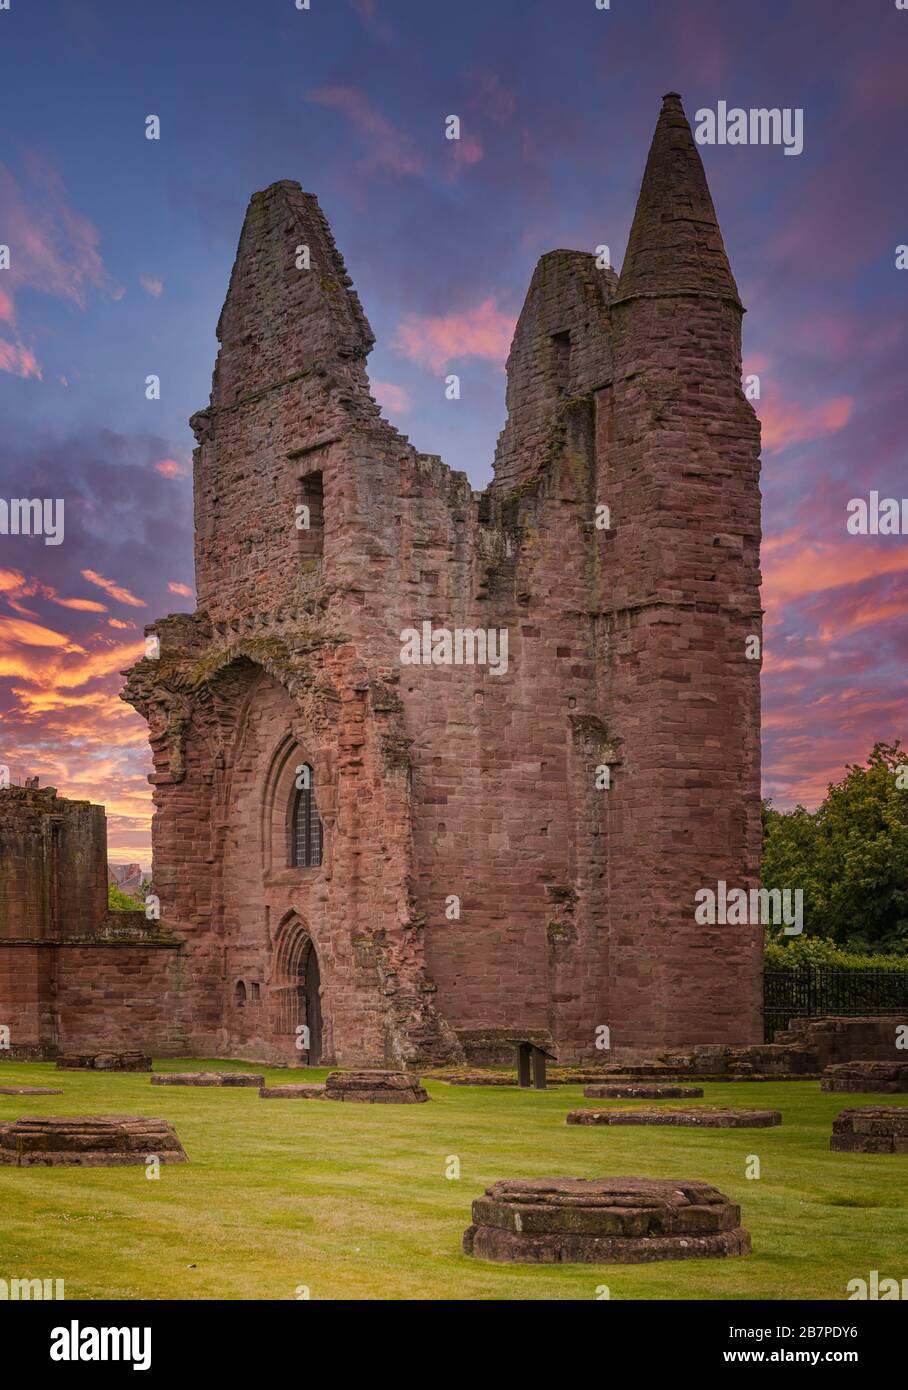 L'abbaye d'Arbroath est célèbre pour sa part associée à la Déclaration d'Arbroath de 1320, qui a affirmé l'indépendance de l'Écosse vis-à-vis de l'Angleterre. Banque D'Images